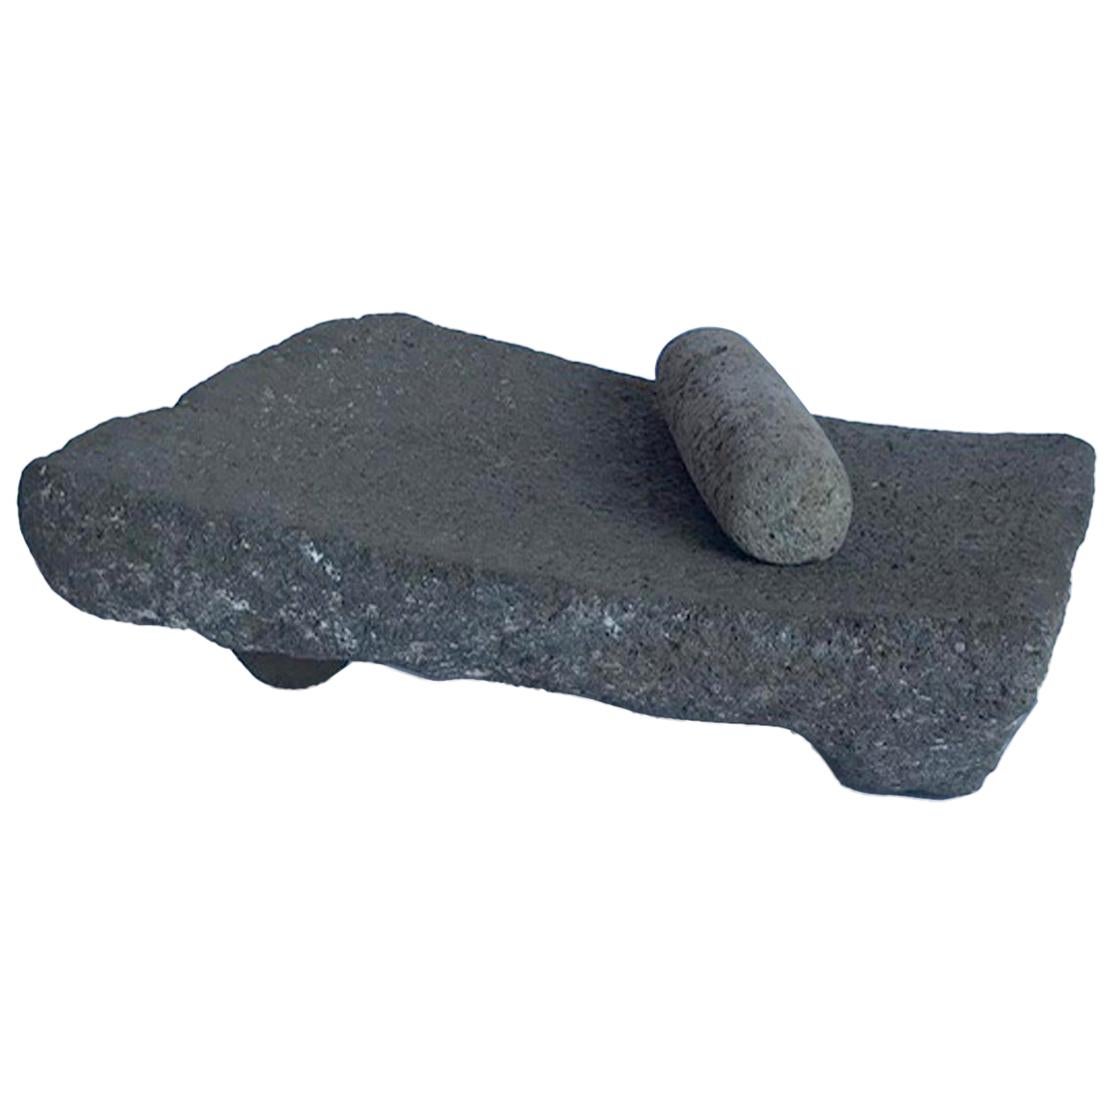 Antique Stone Matate, Grinder